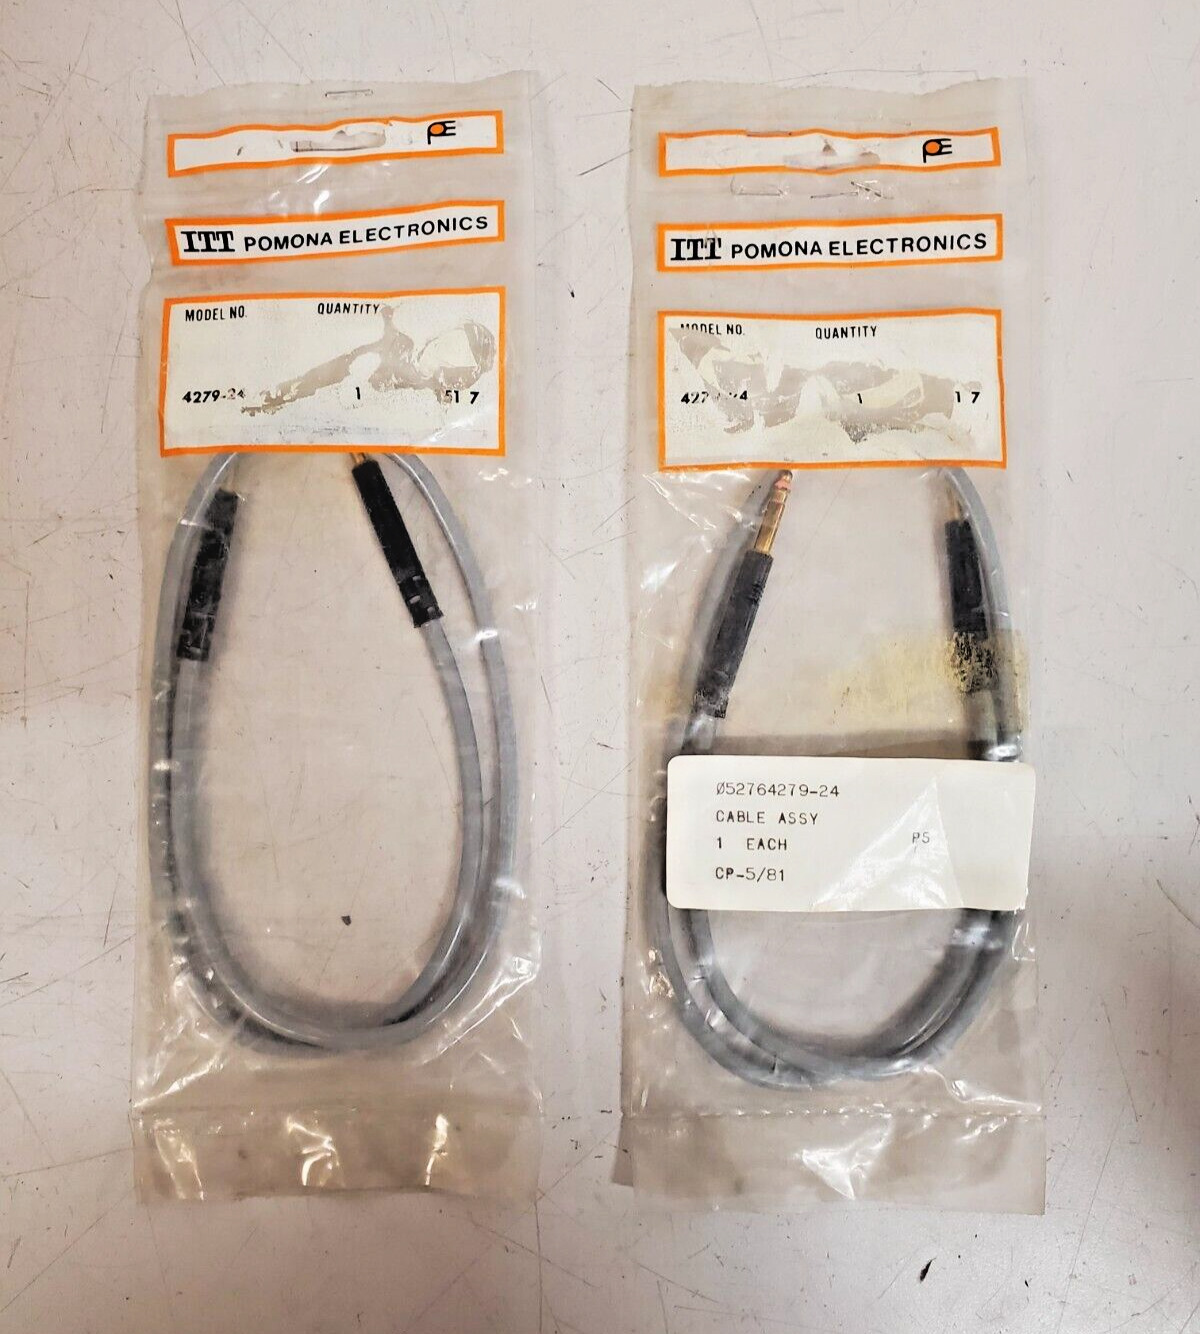 2 Qty. of ITT Pomona Electronics Cable Assy 4279-24 | 052764279-24 (2 Qty)